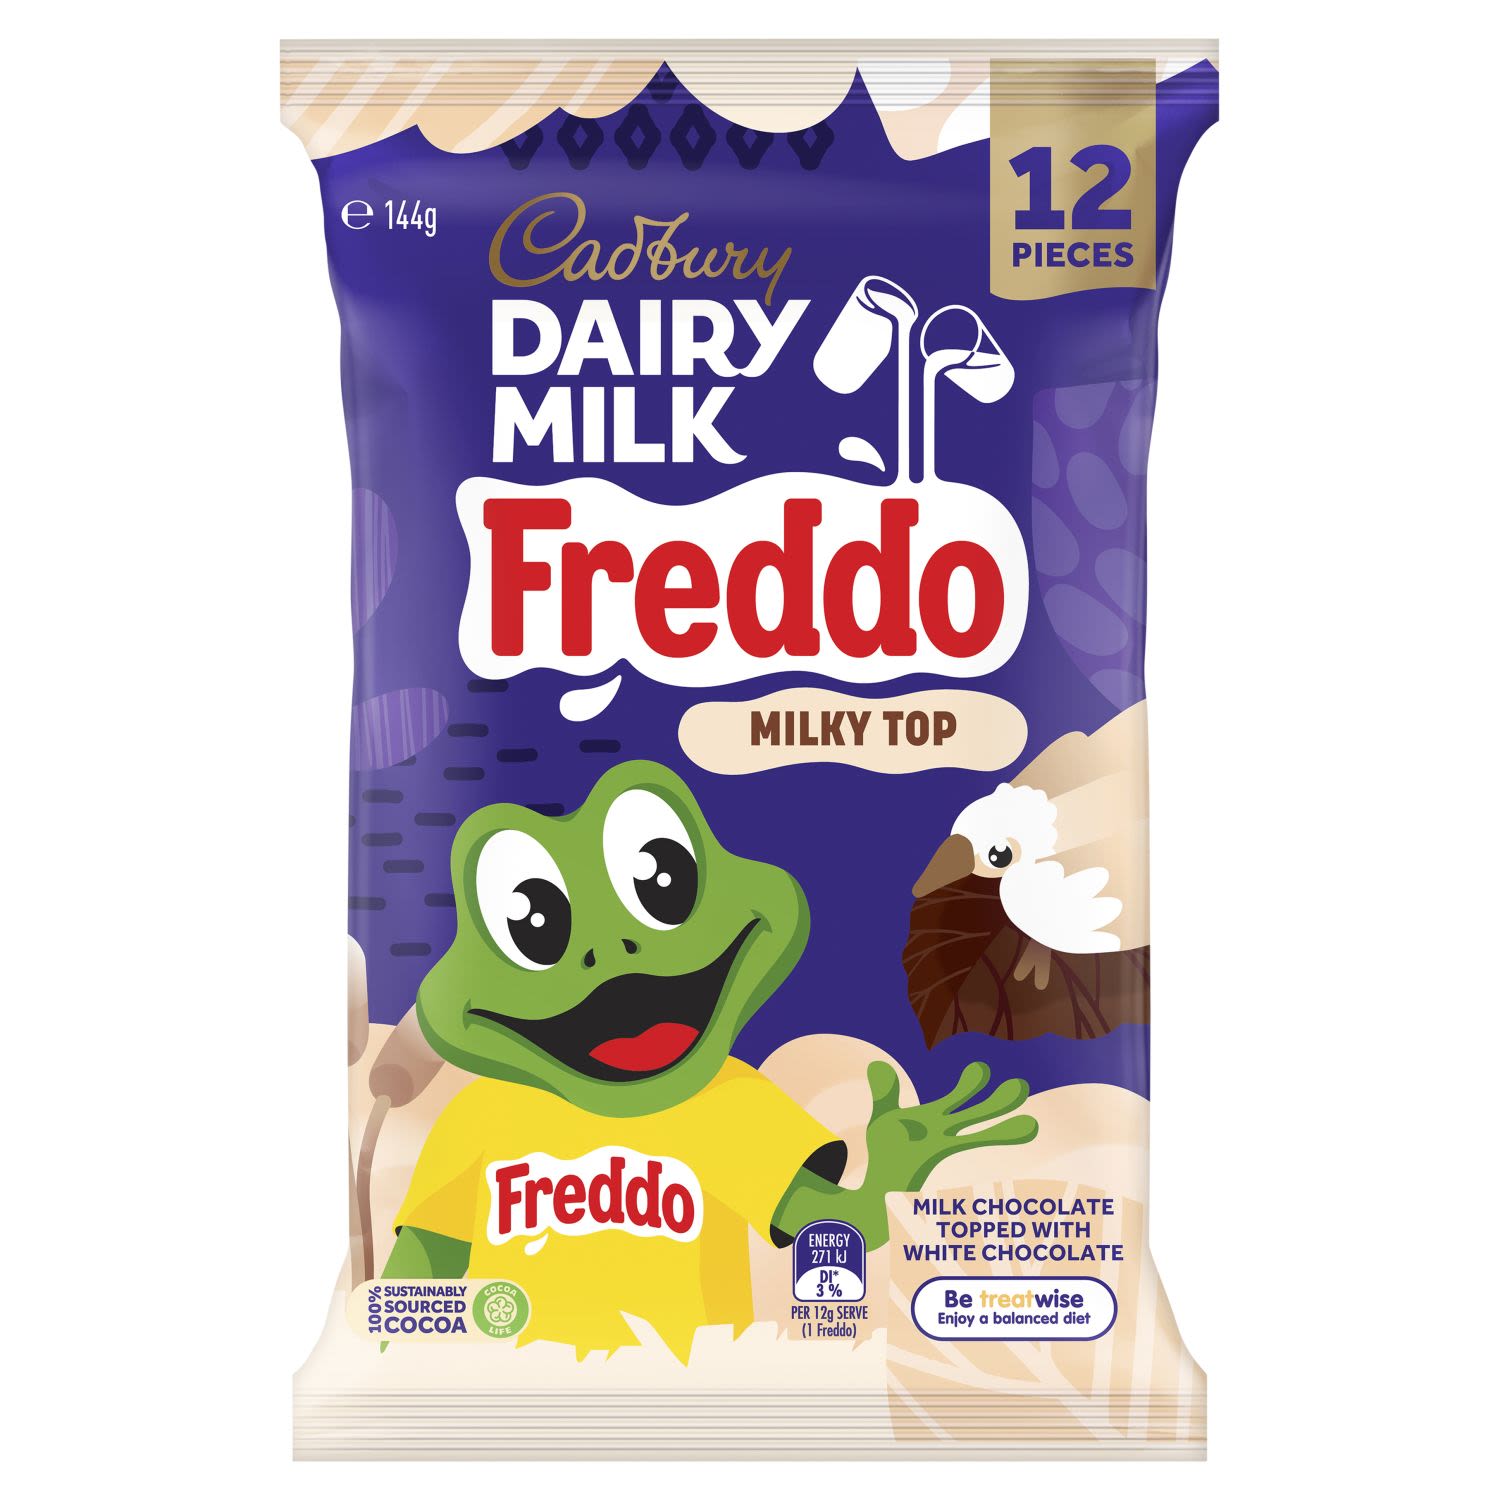 Cadbury Dairy Milk Freddo Milky Top Sharepack, 12 Each